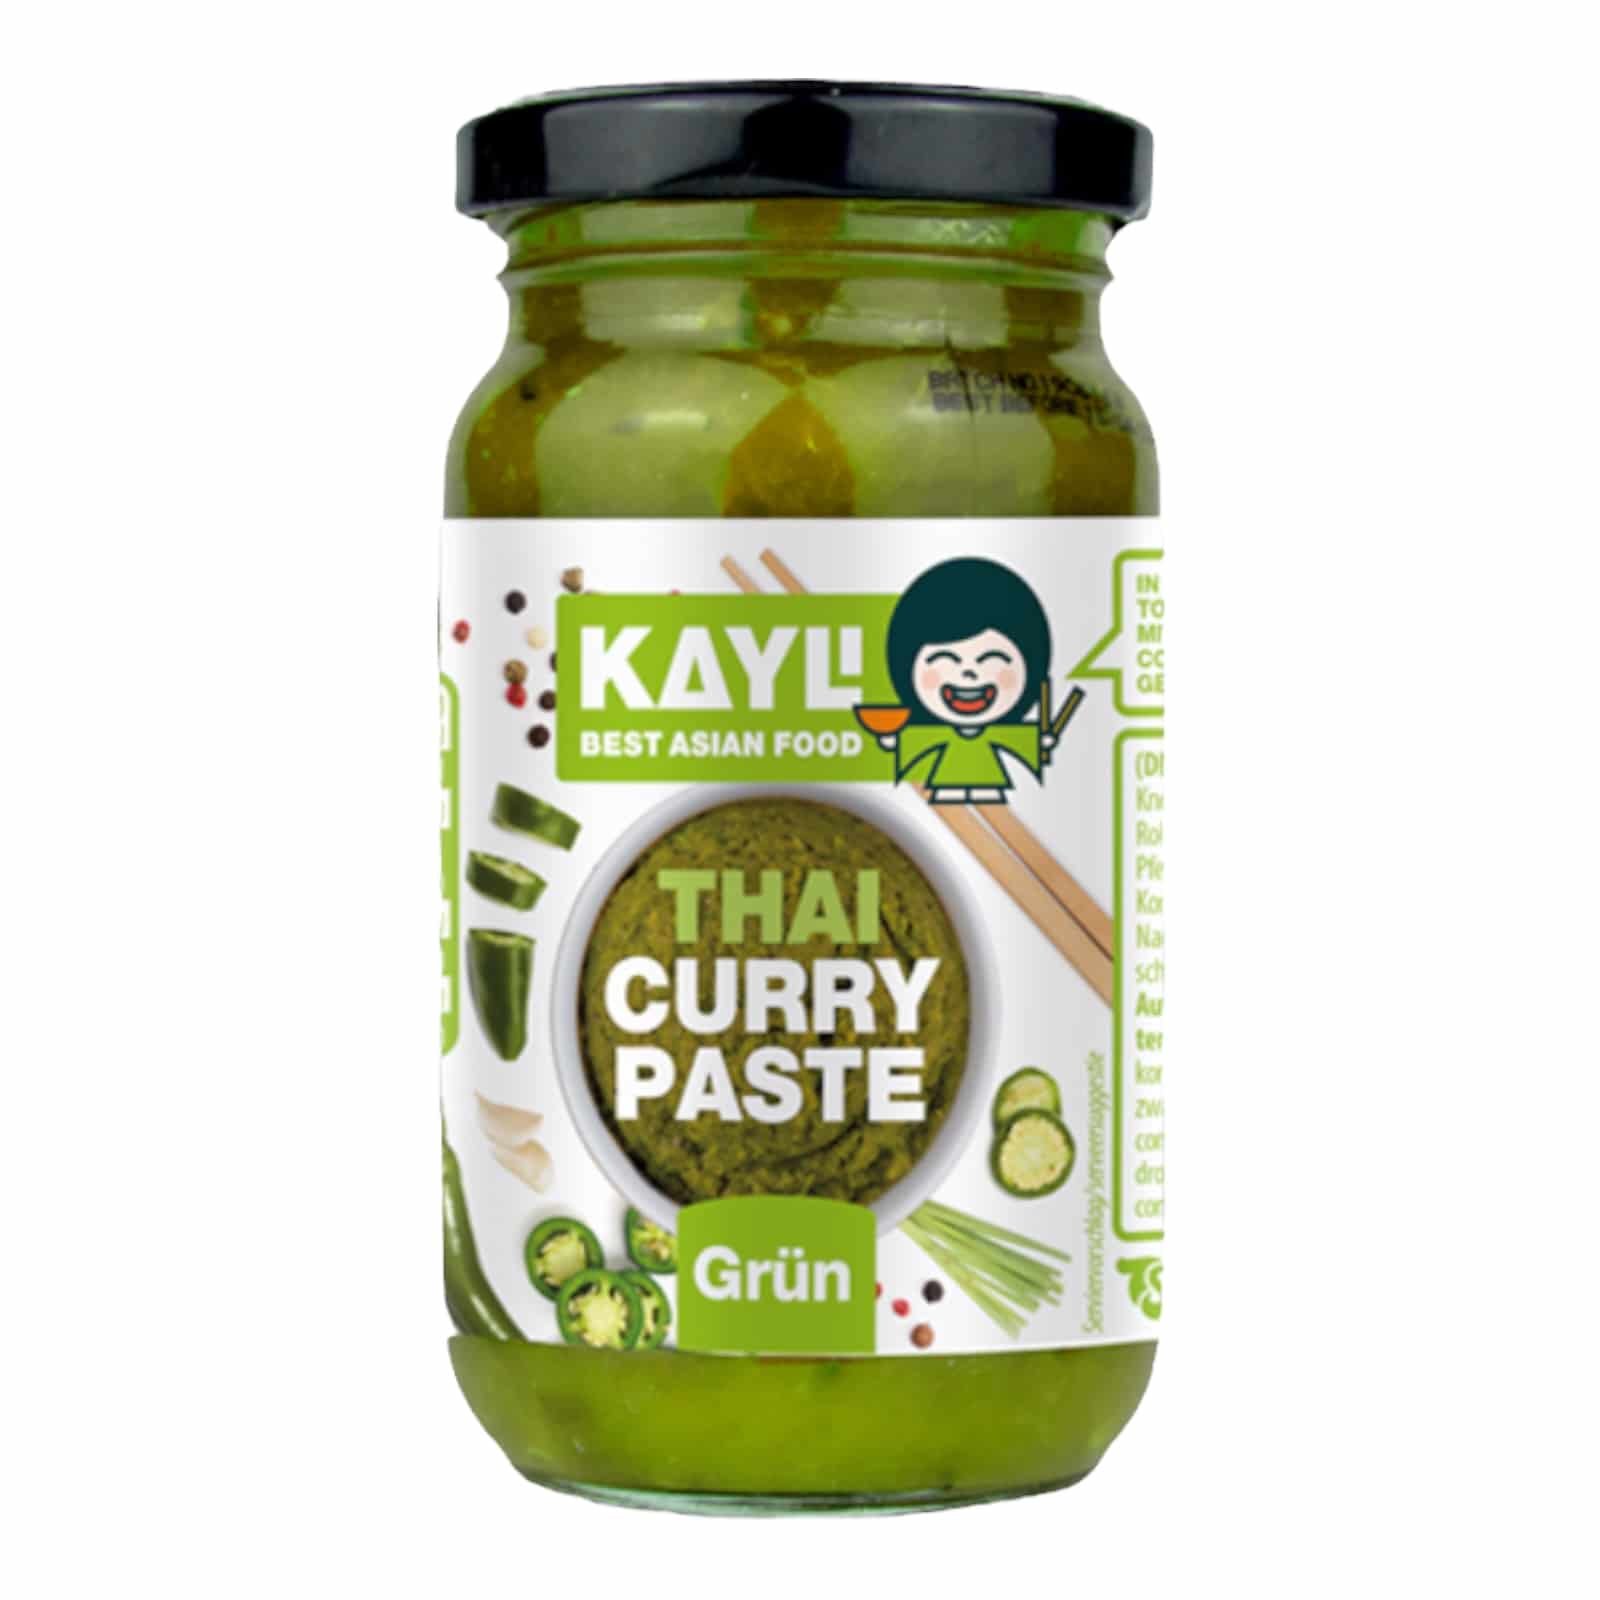 KAY LI Green Curry Paste 200g